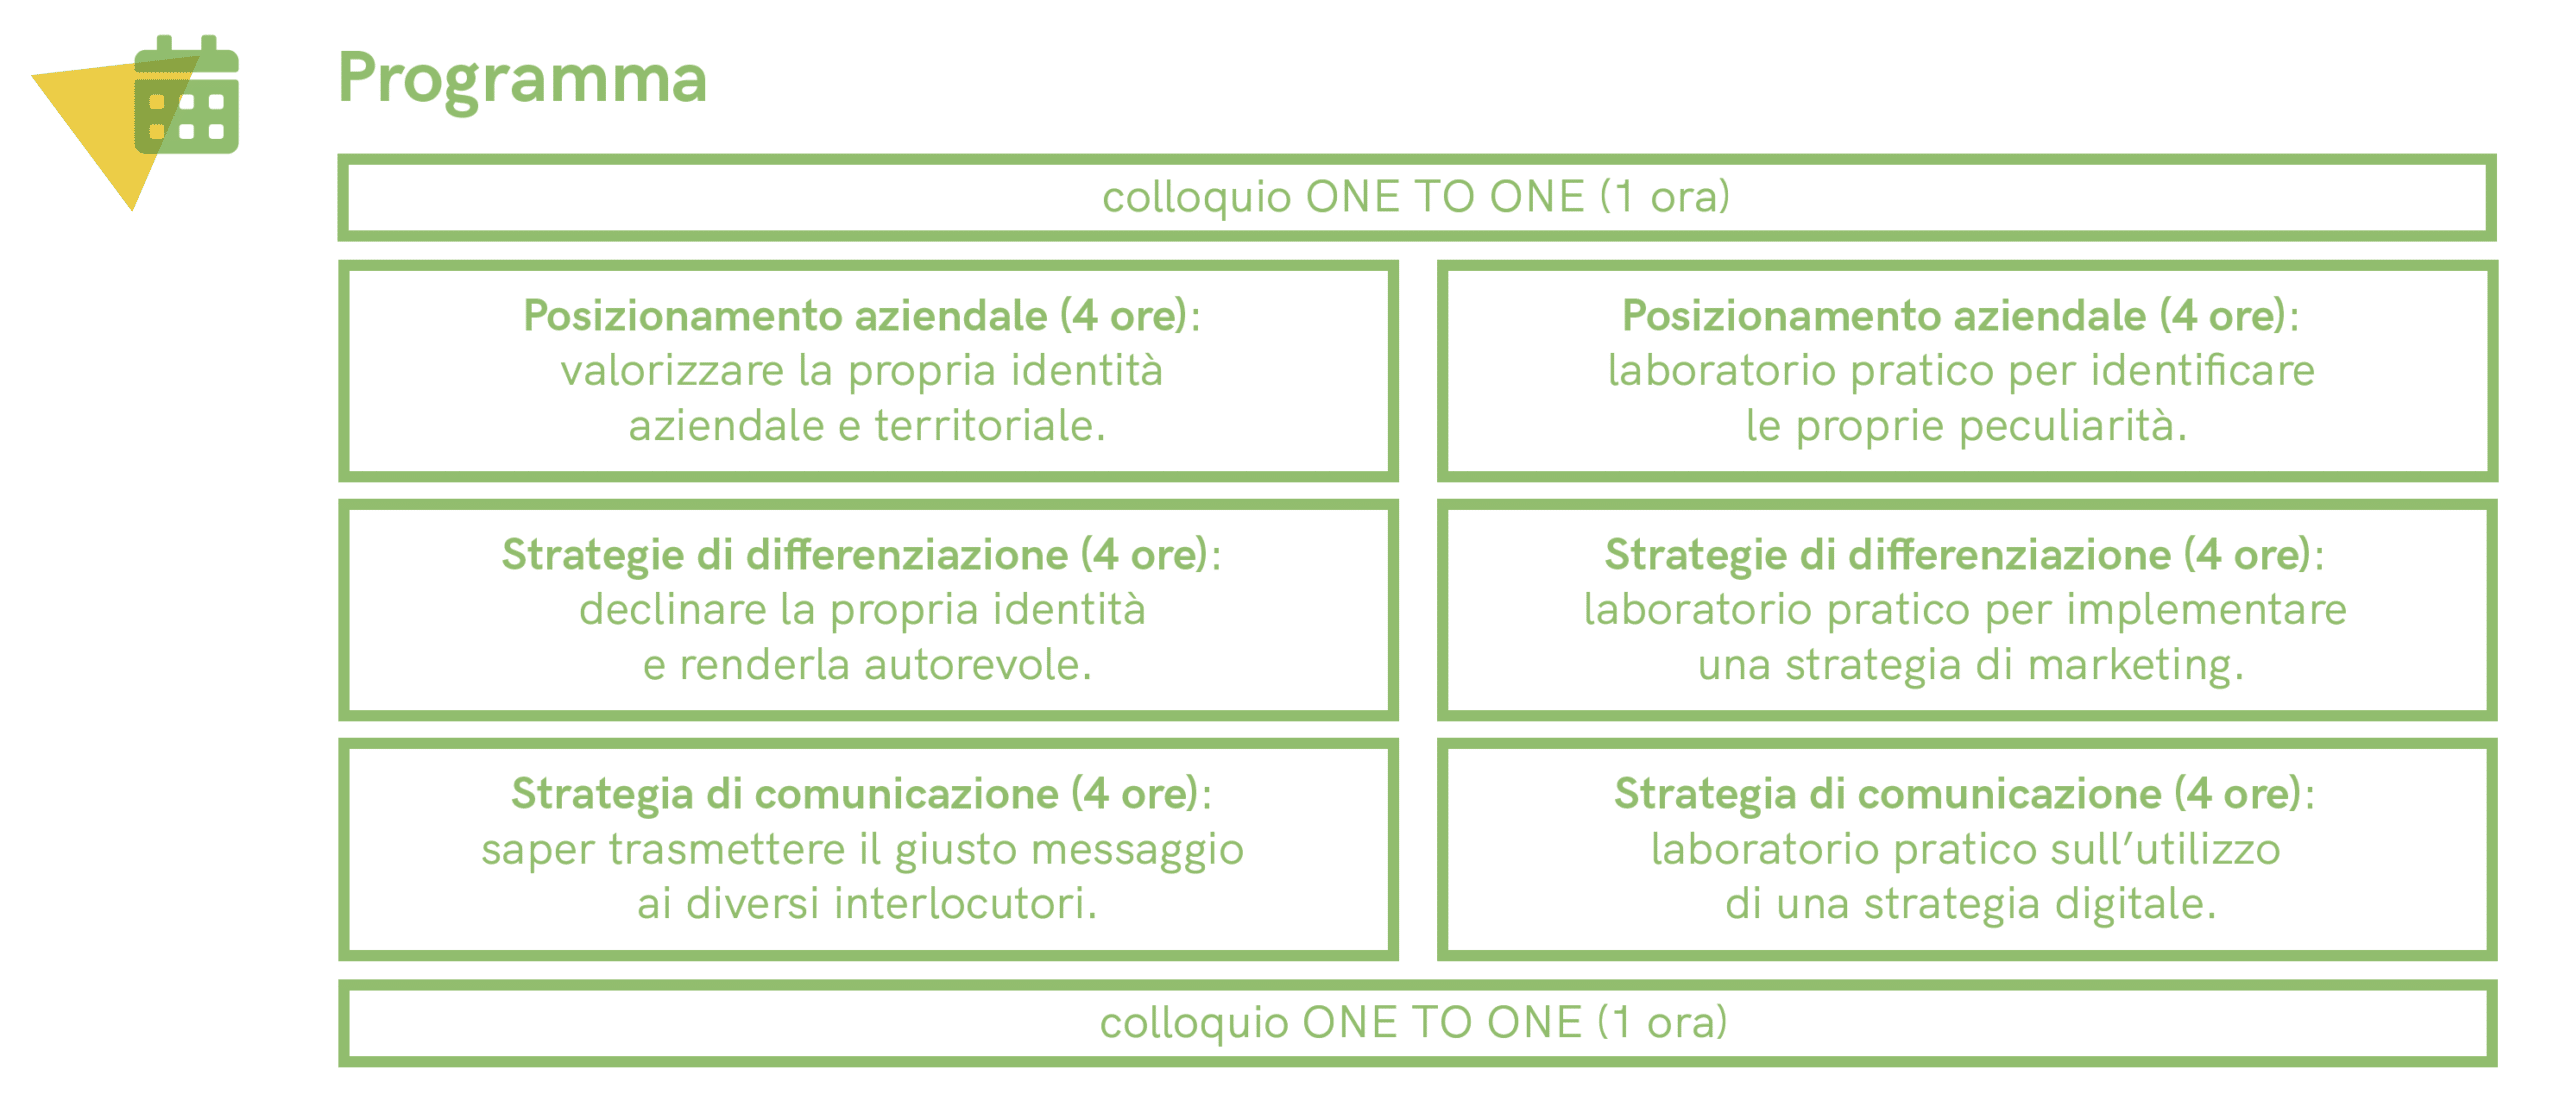 formazione - coldiretti - comunicare il valore del territorio - Intuito Marketing - Consulenza Marketing - Trentino e Cortina d'Ampezzo